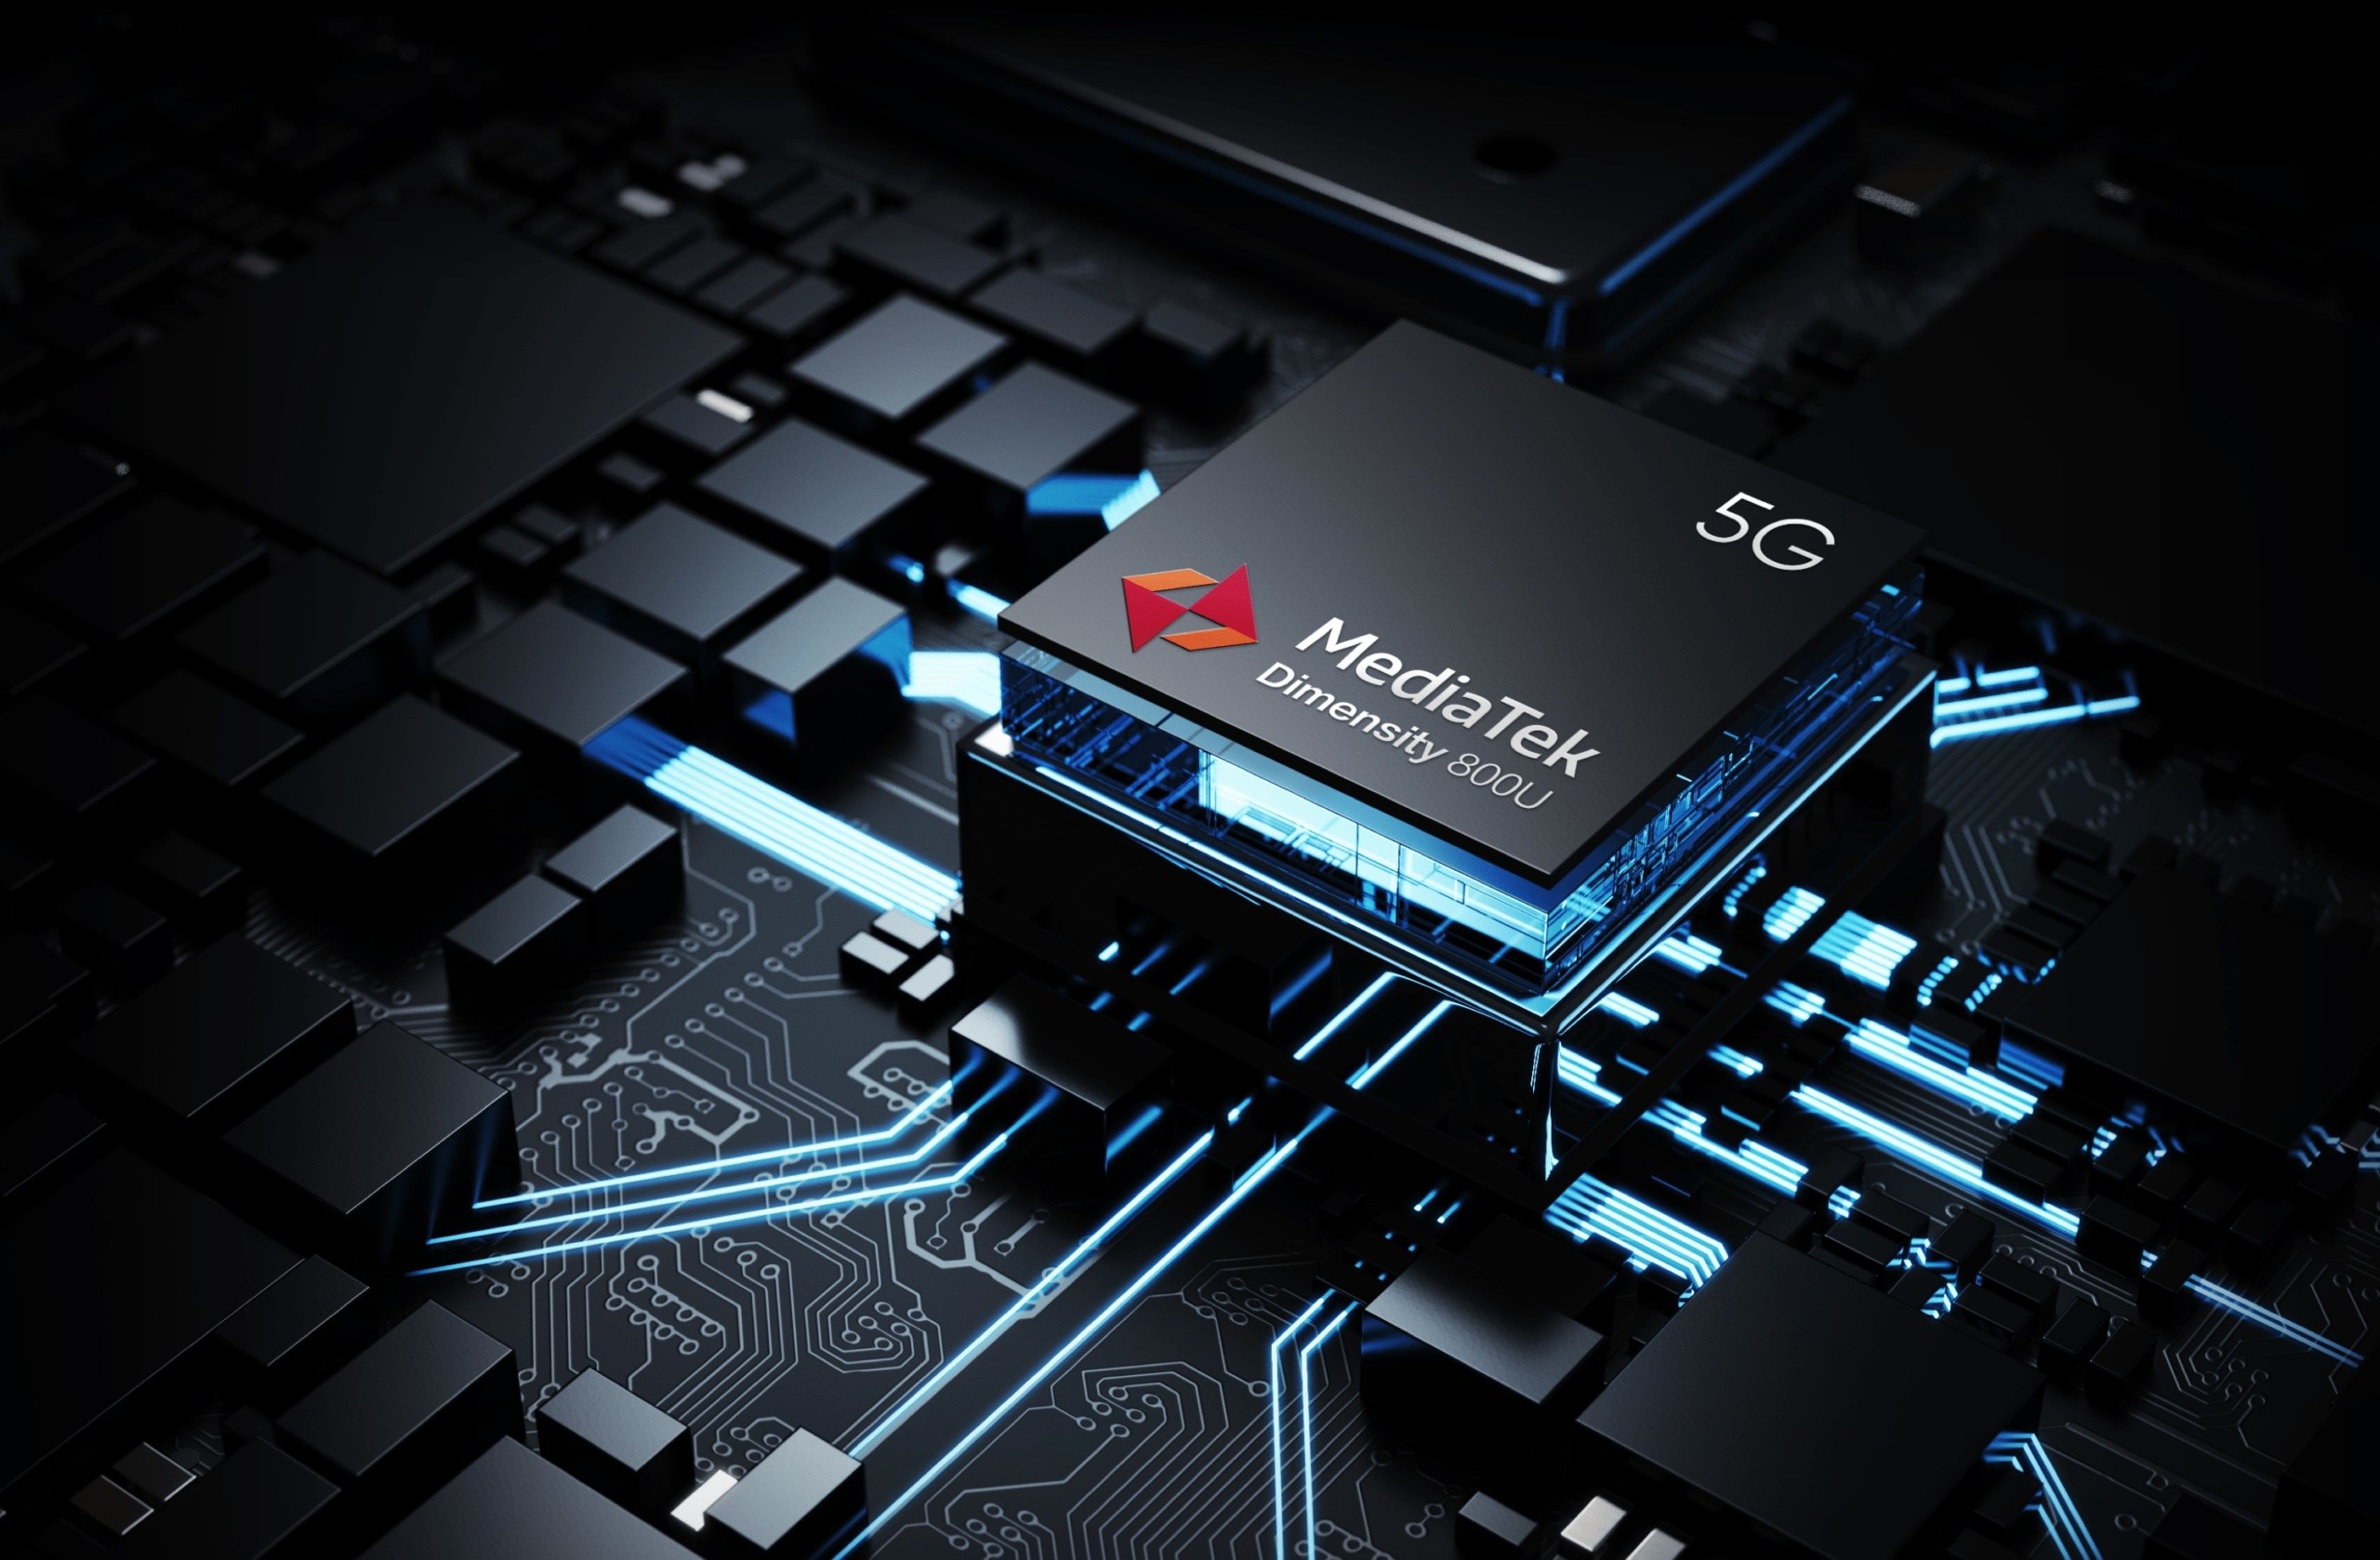 MediaTek overtakes Qualcomm as the biggest chip vendor for Q3 2020